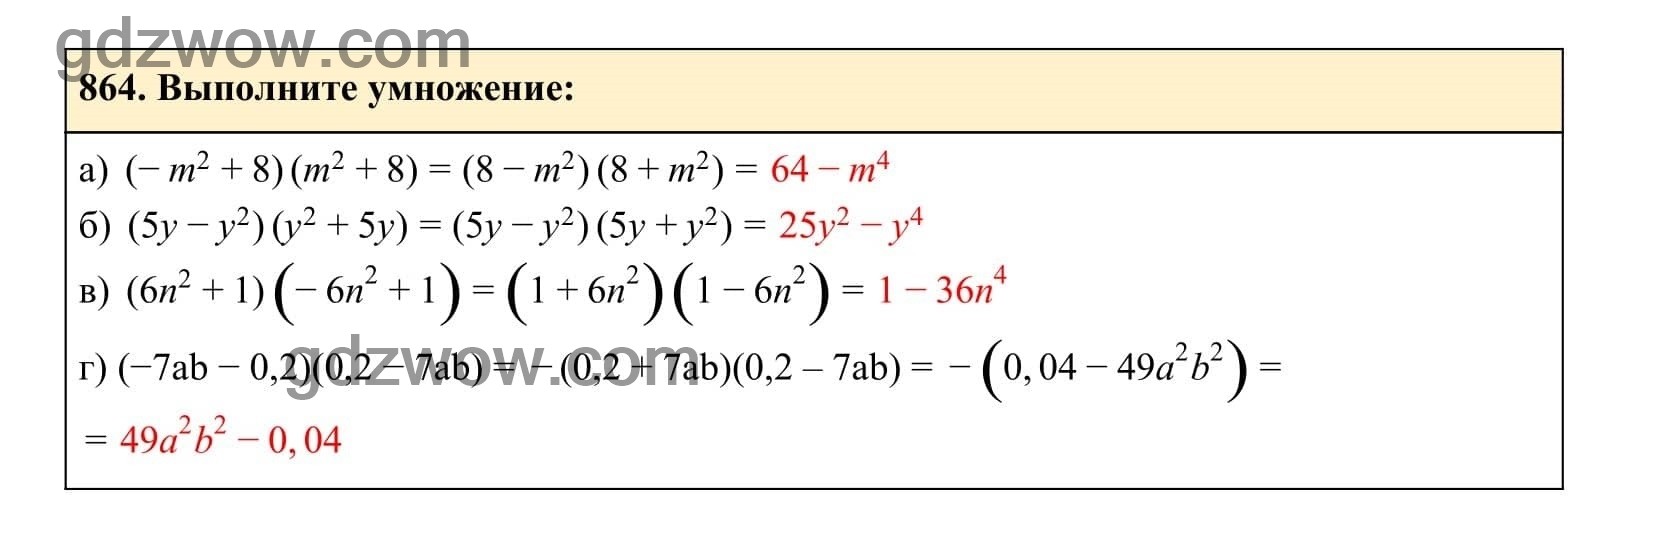 Упражнение 864 - ГДЗ по Алгебре 7 класс Учебник Макарычев (решебник) - GDZwow